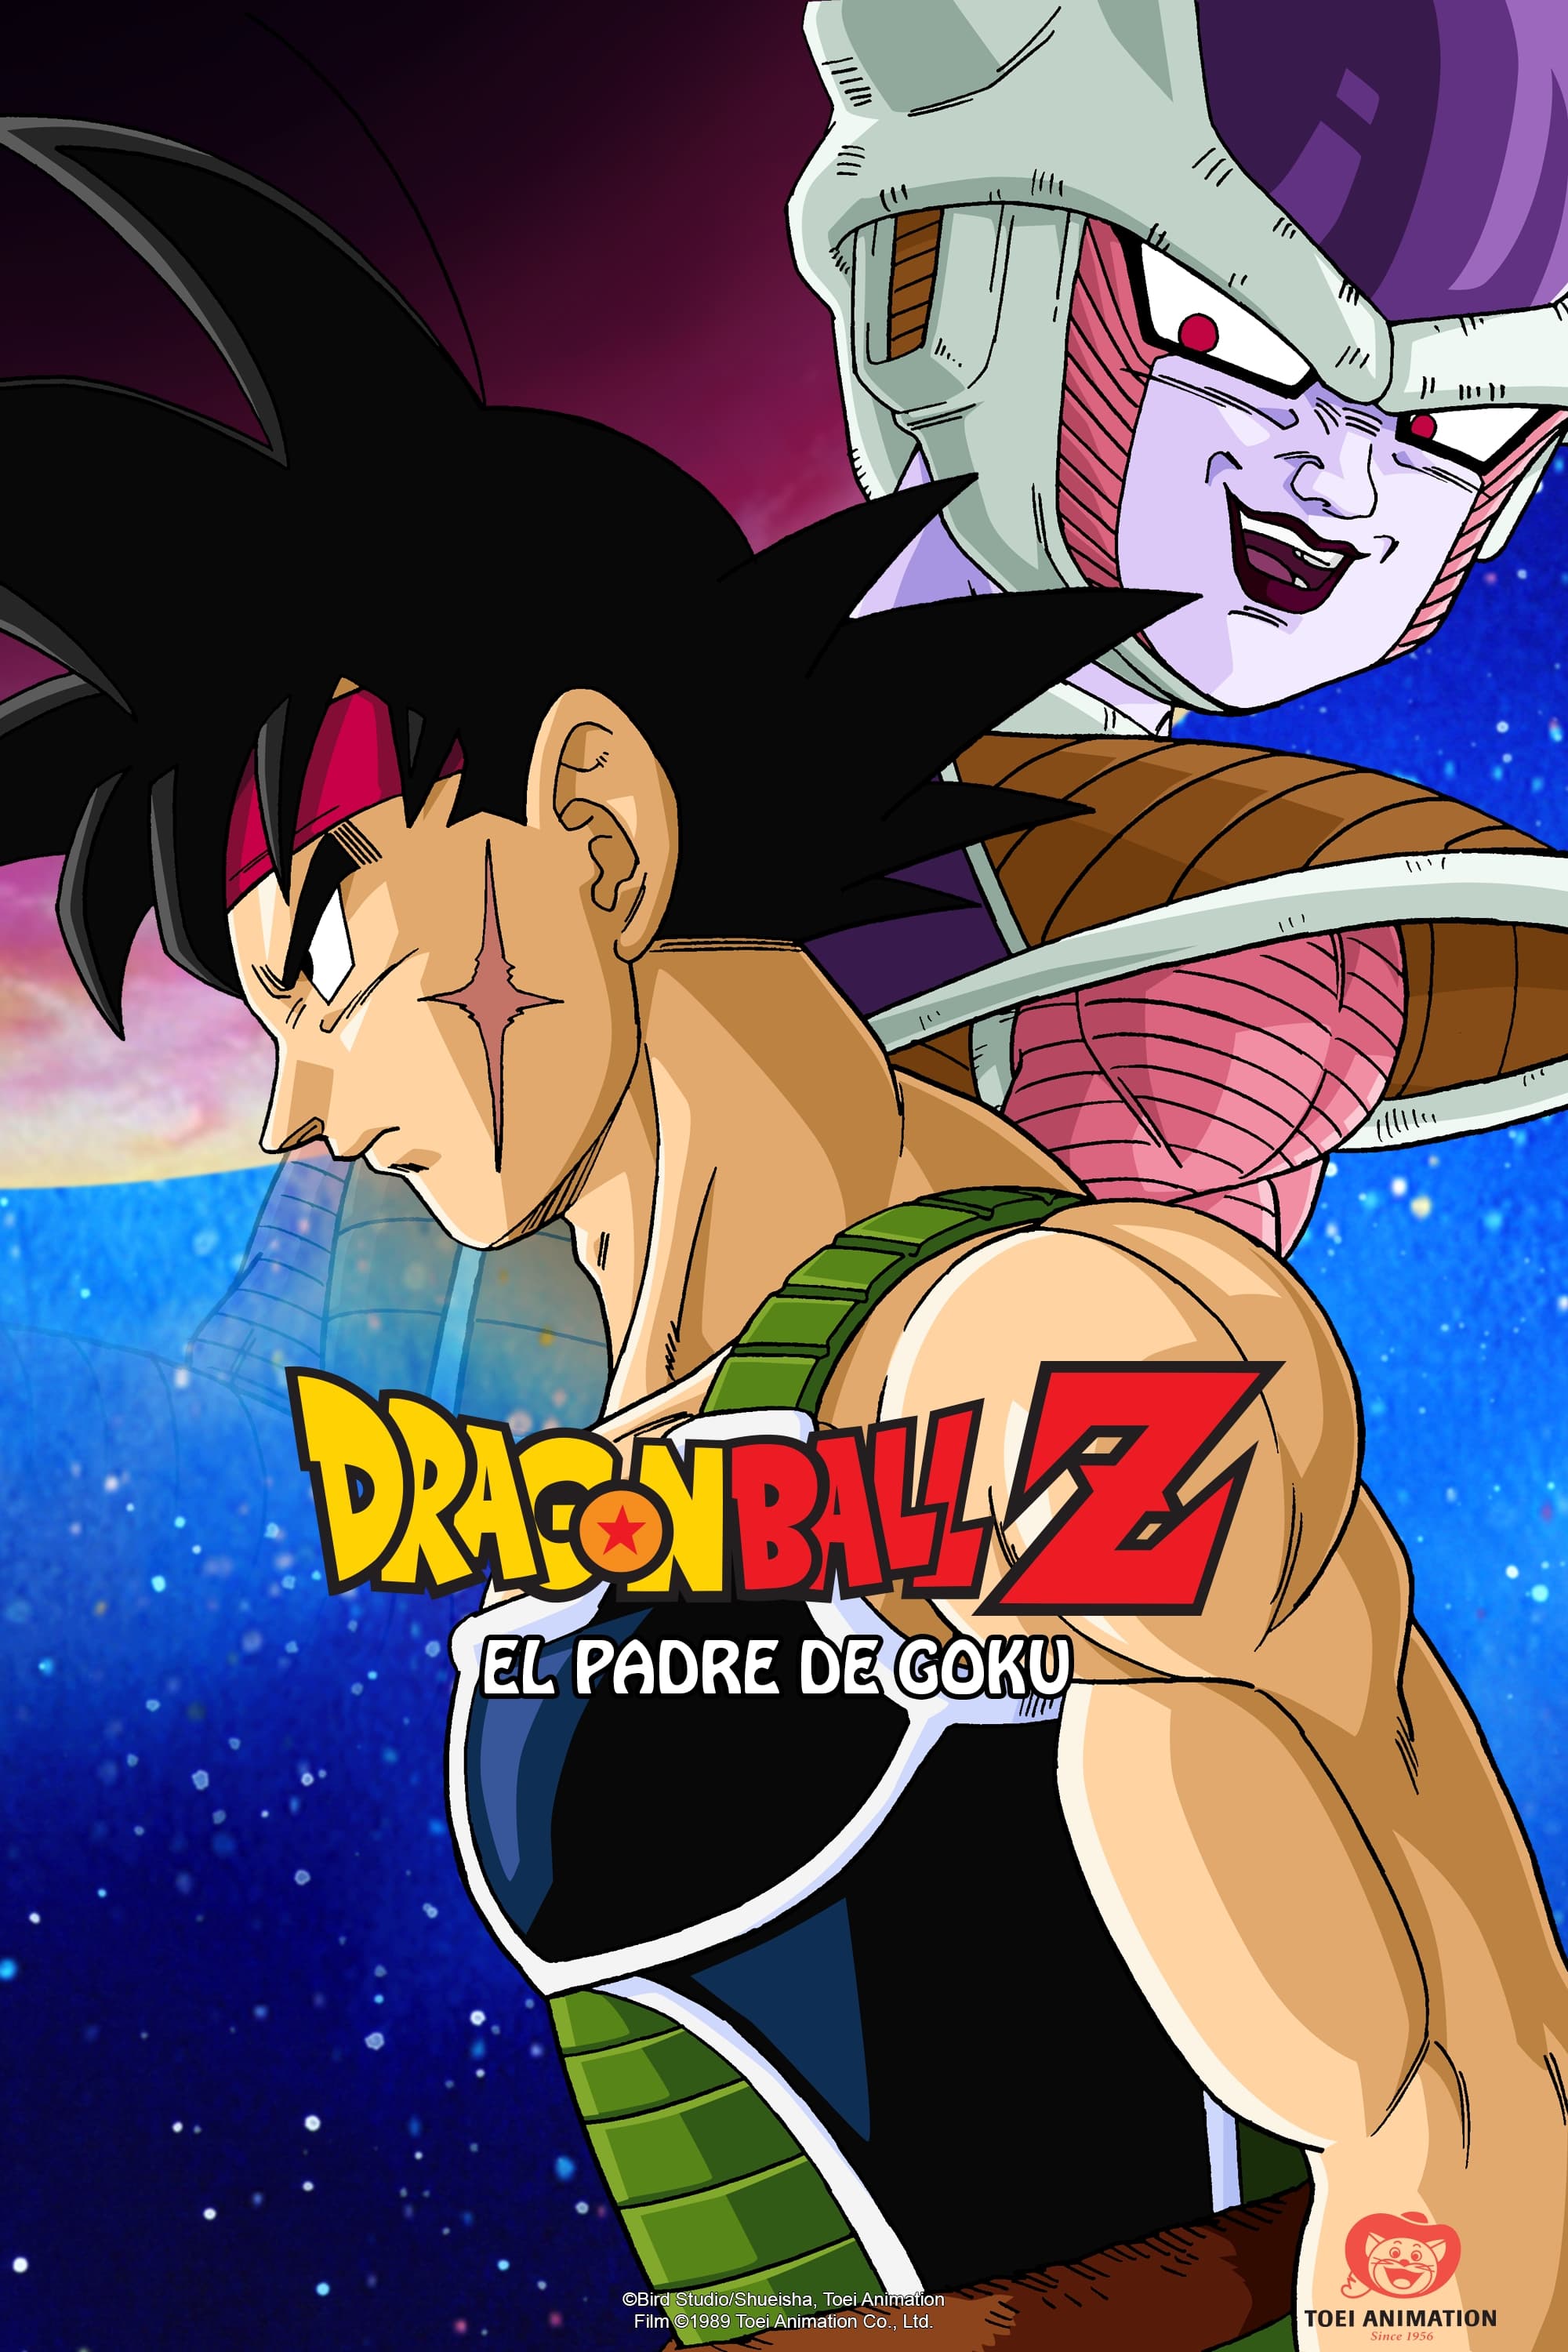 Dragon Ball Z: La Batalla de Freezer contra el Padre de Goku (1990) -  Posters — The Movie Database (TMDB)